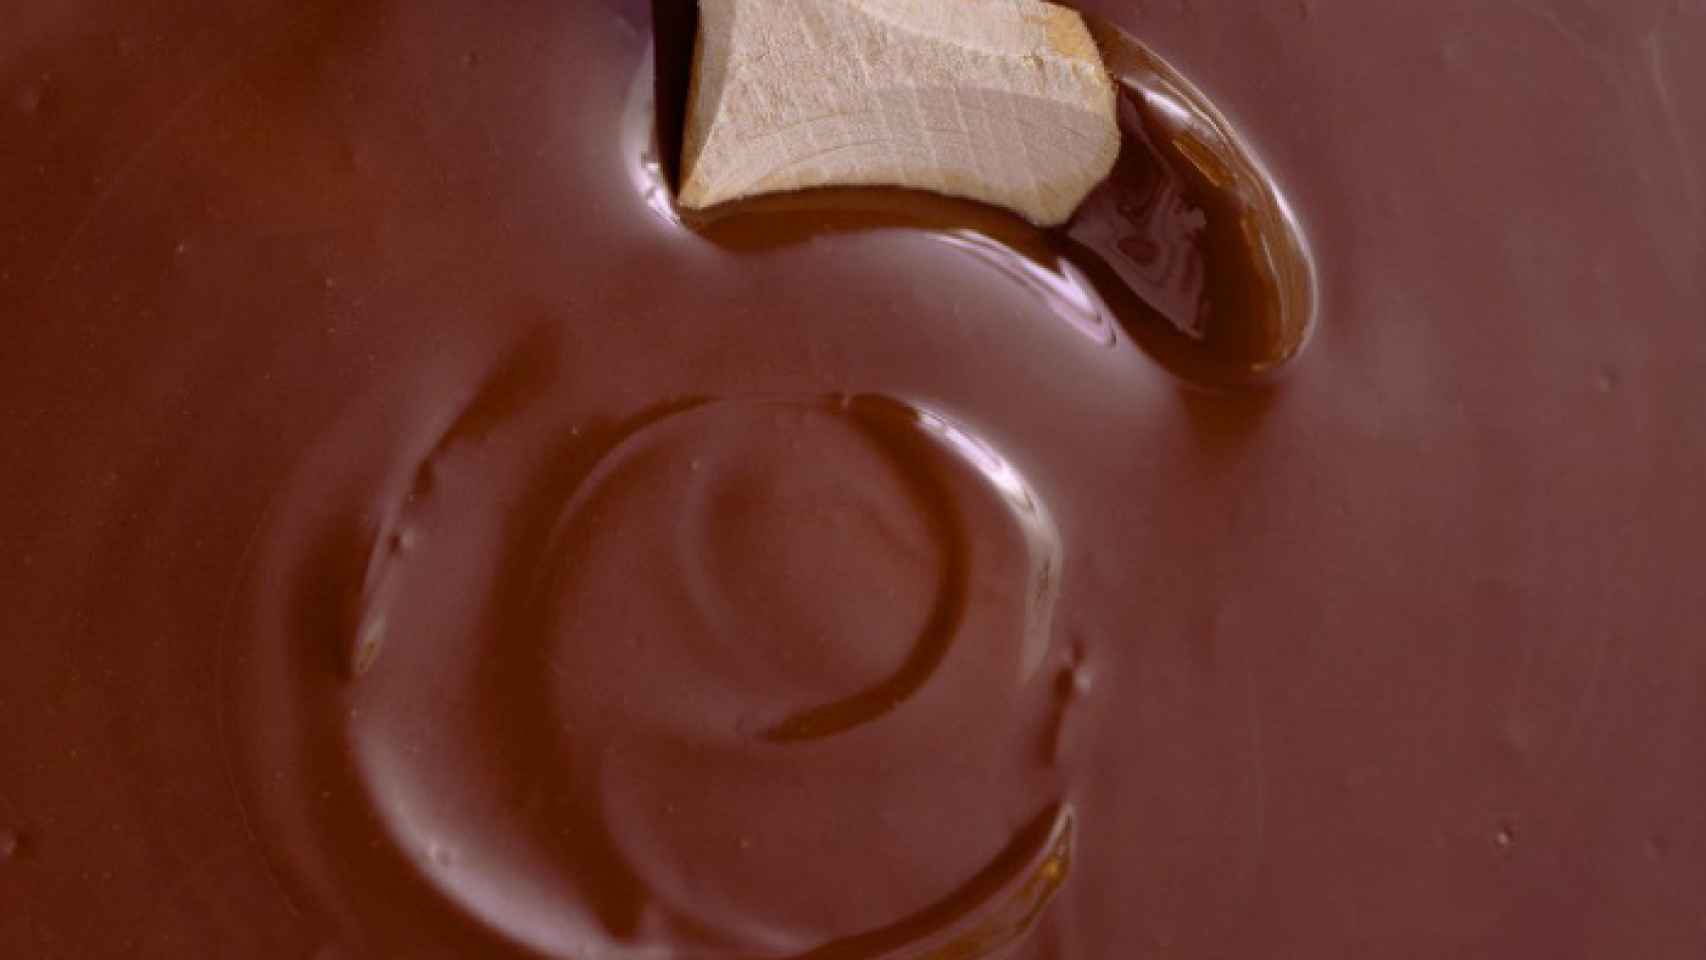 ¿Qué pasa si comes chocolate con salmonella